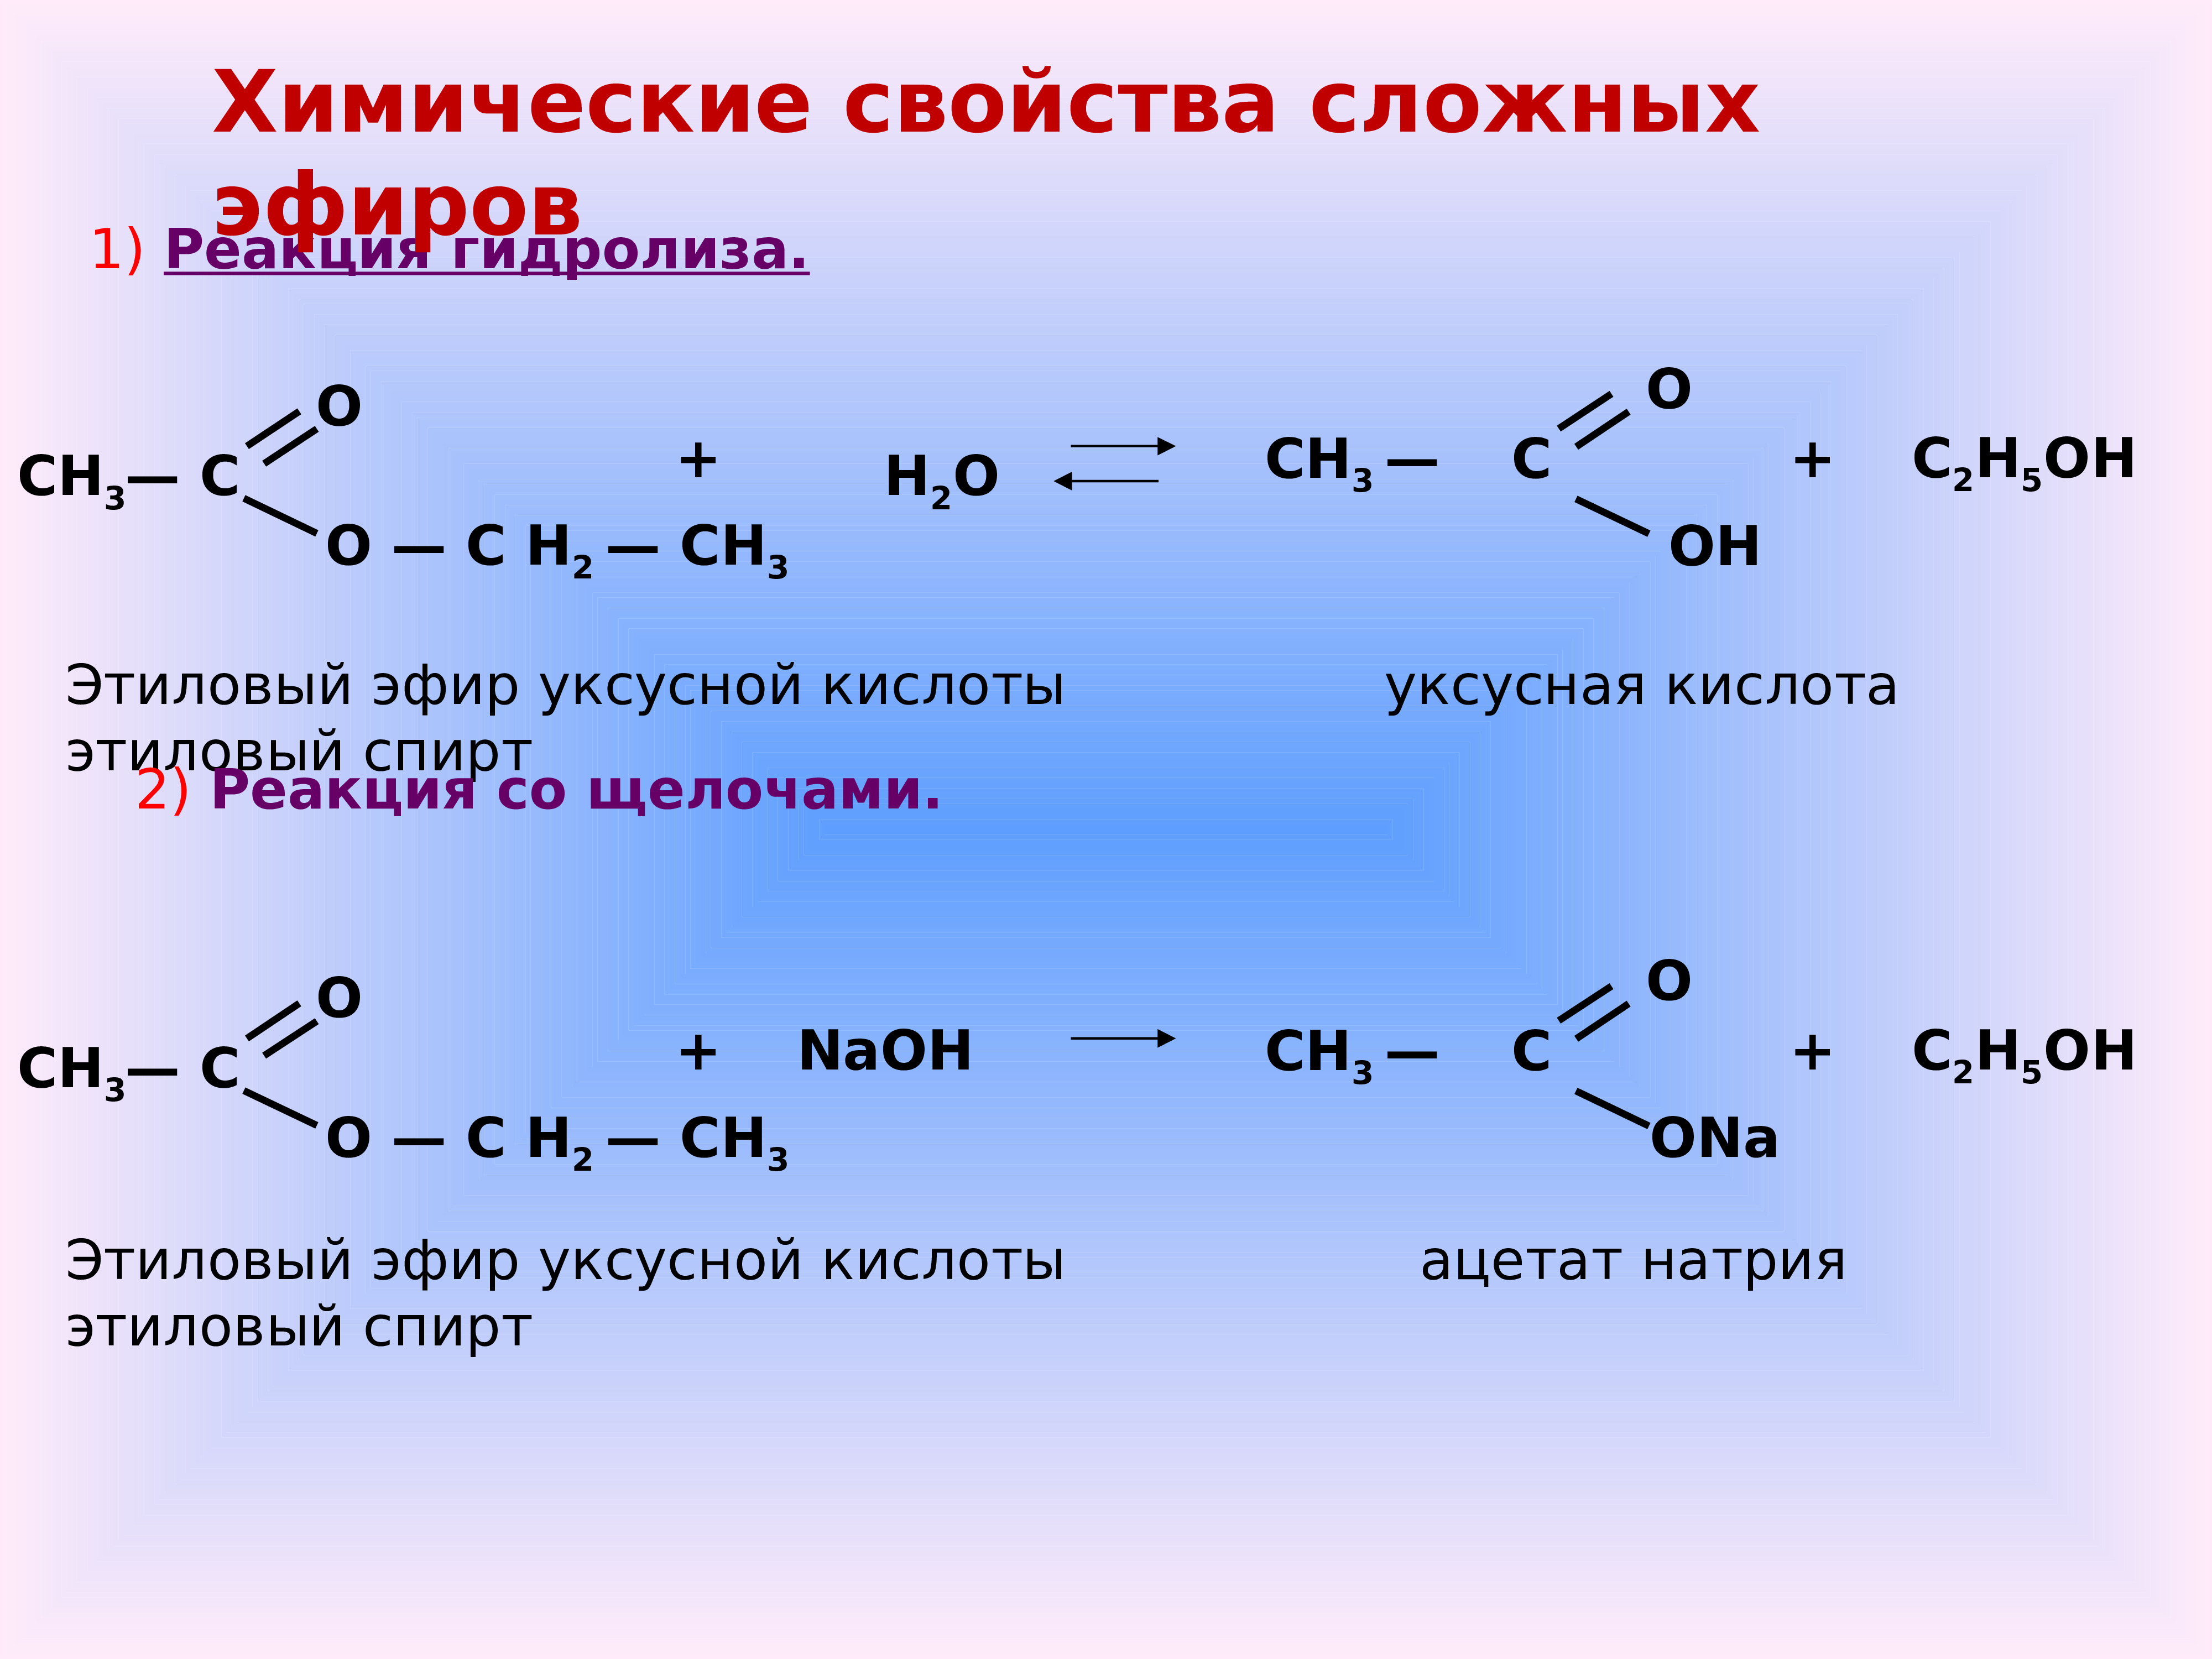 При гидролизе этилацетата образуются. Химические свойства сложных эфиров 10 класс химия. Сложные эфиры химия химические свойства. Презентация эфиры 10 класс химия. Общая формула сложных эфиров по химии 10 класс.